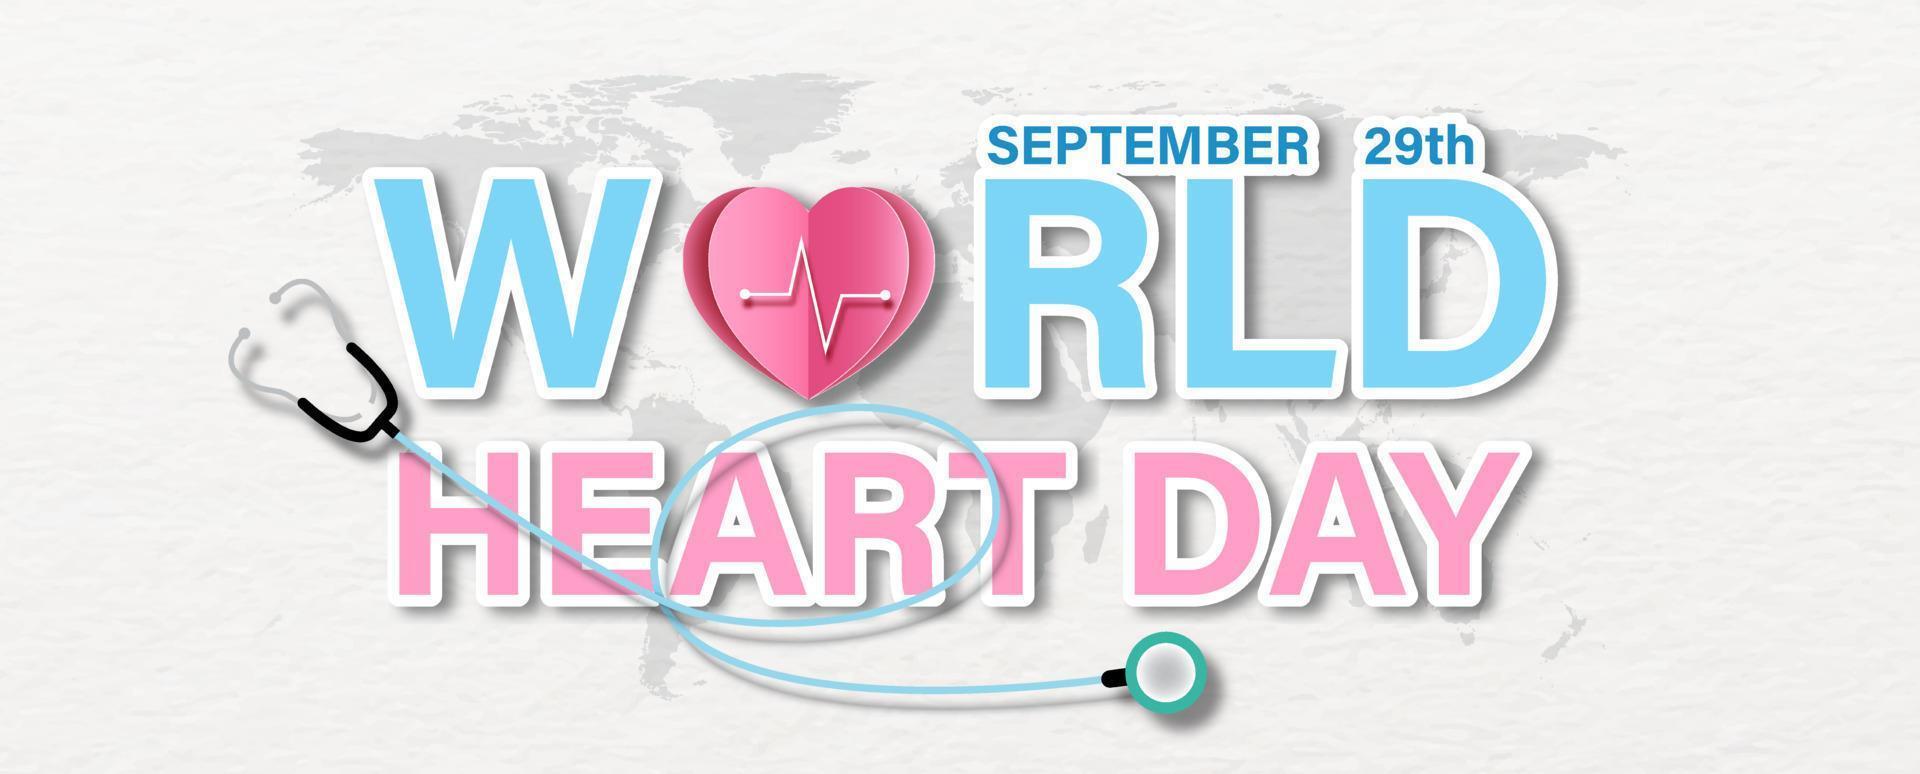 conception de libellé de la journée mondiale du coeur avec un coeur rose dans un style artisanal en papier origami et un stéthoscope sur la carte du monde et un fond de papier blanc. vecteur